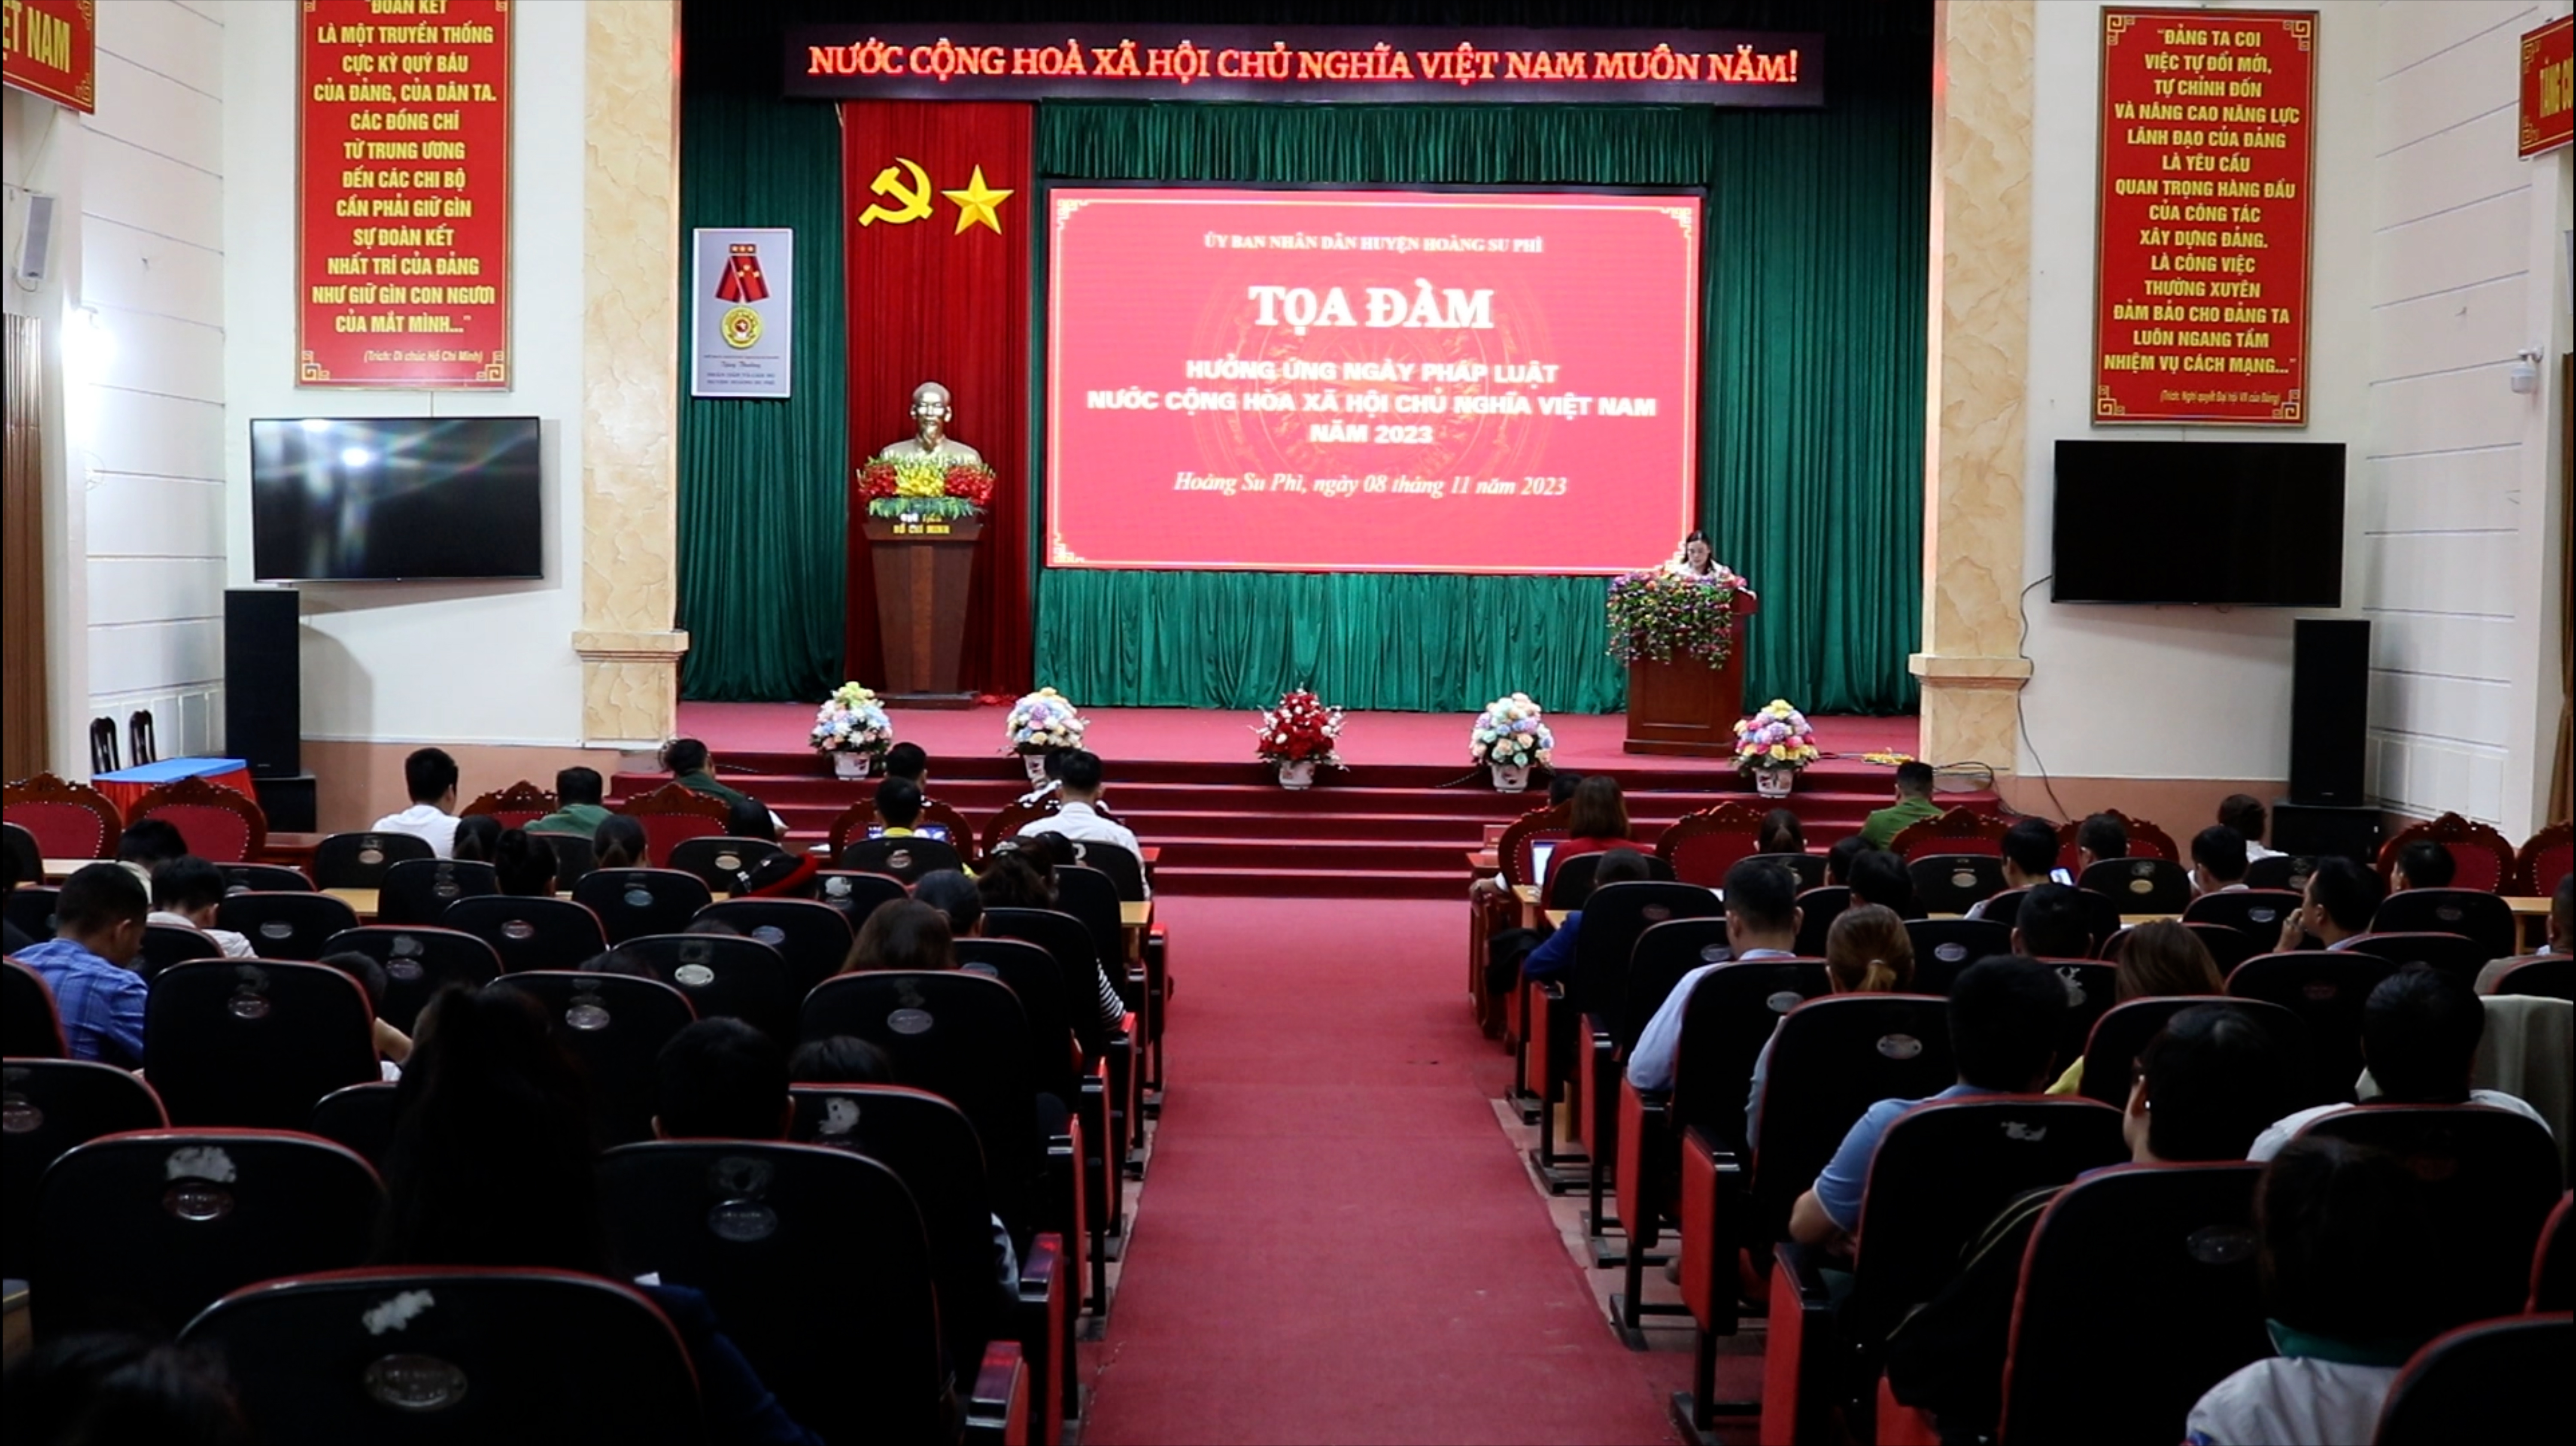 Hoàng Su Phì tọa đàm hưởng ứng Ngày Pháp luật nước cộng hoà xã hội chủ nghĩa Việt Nam năm 2023